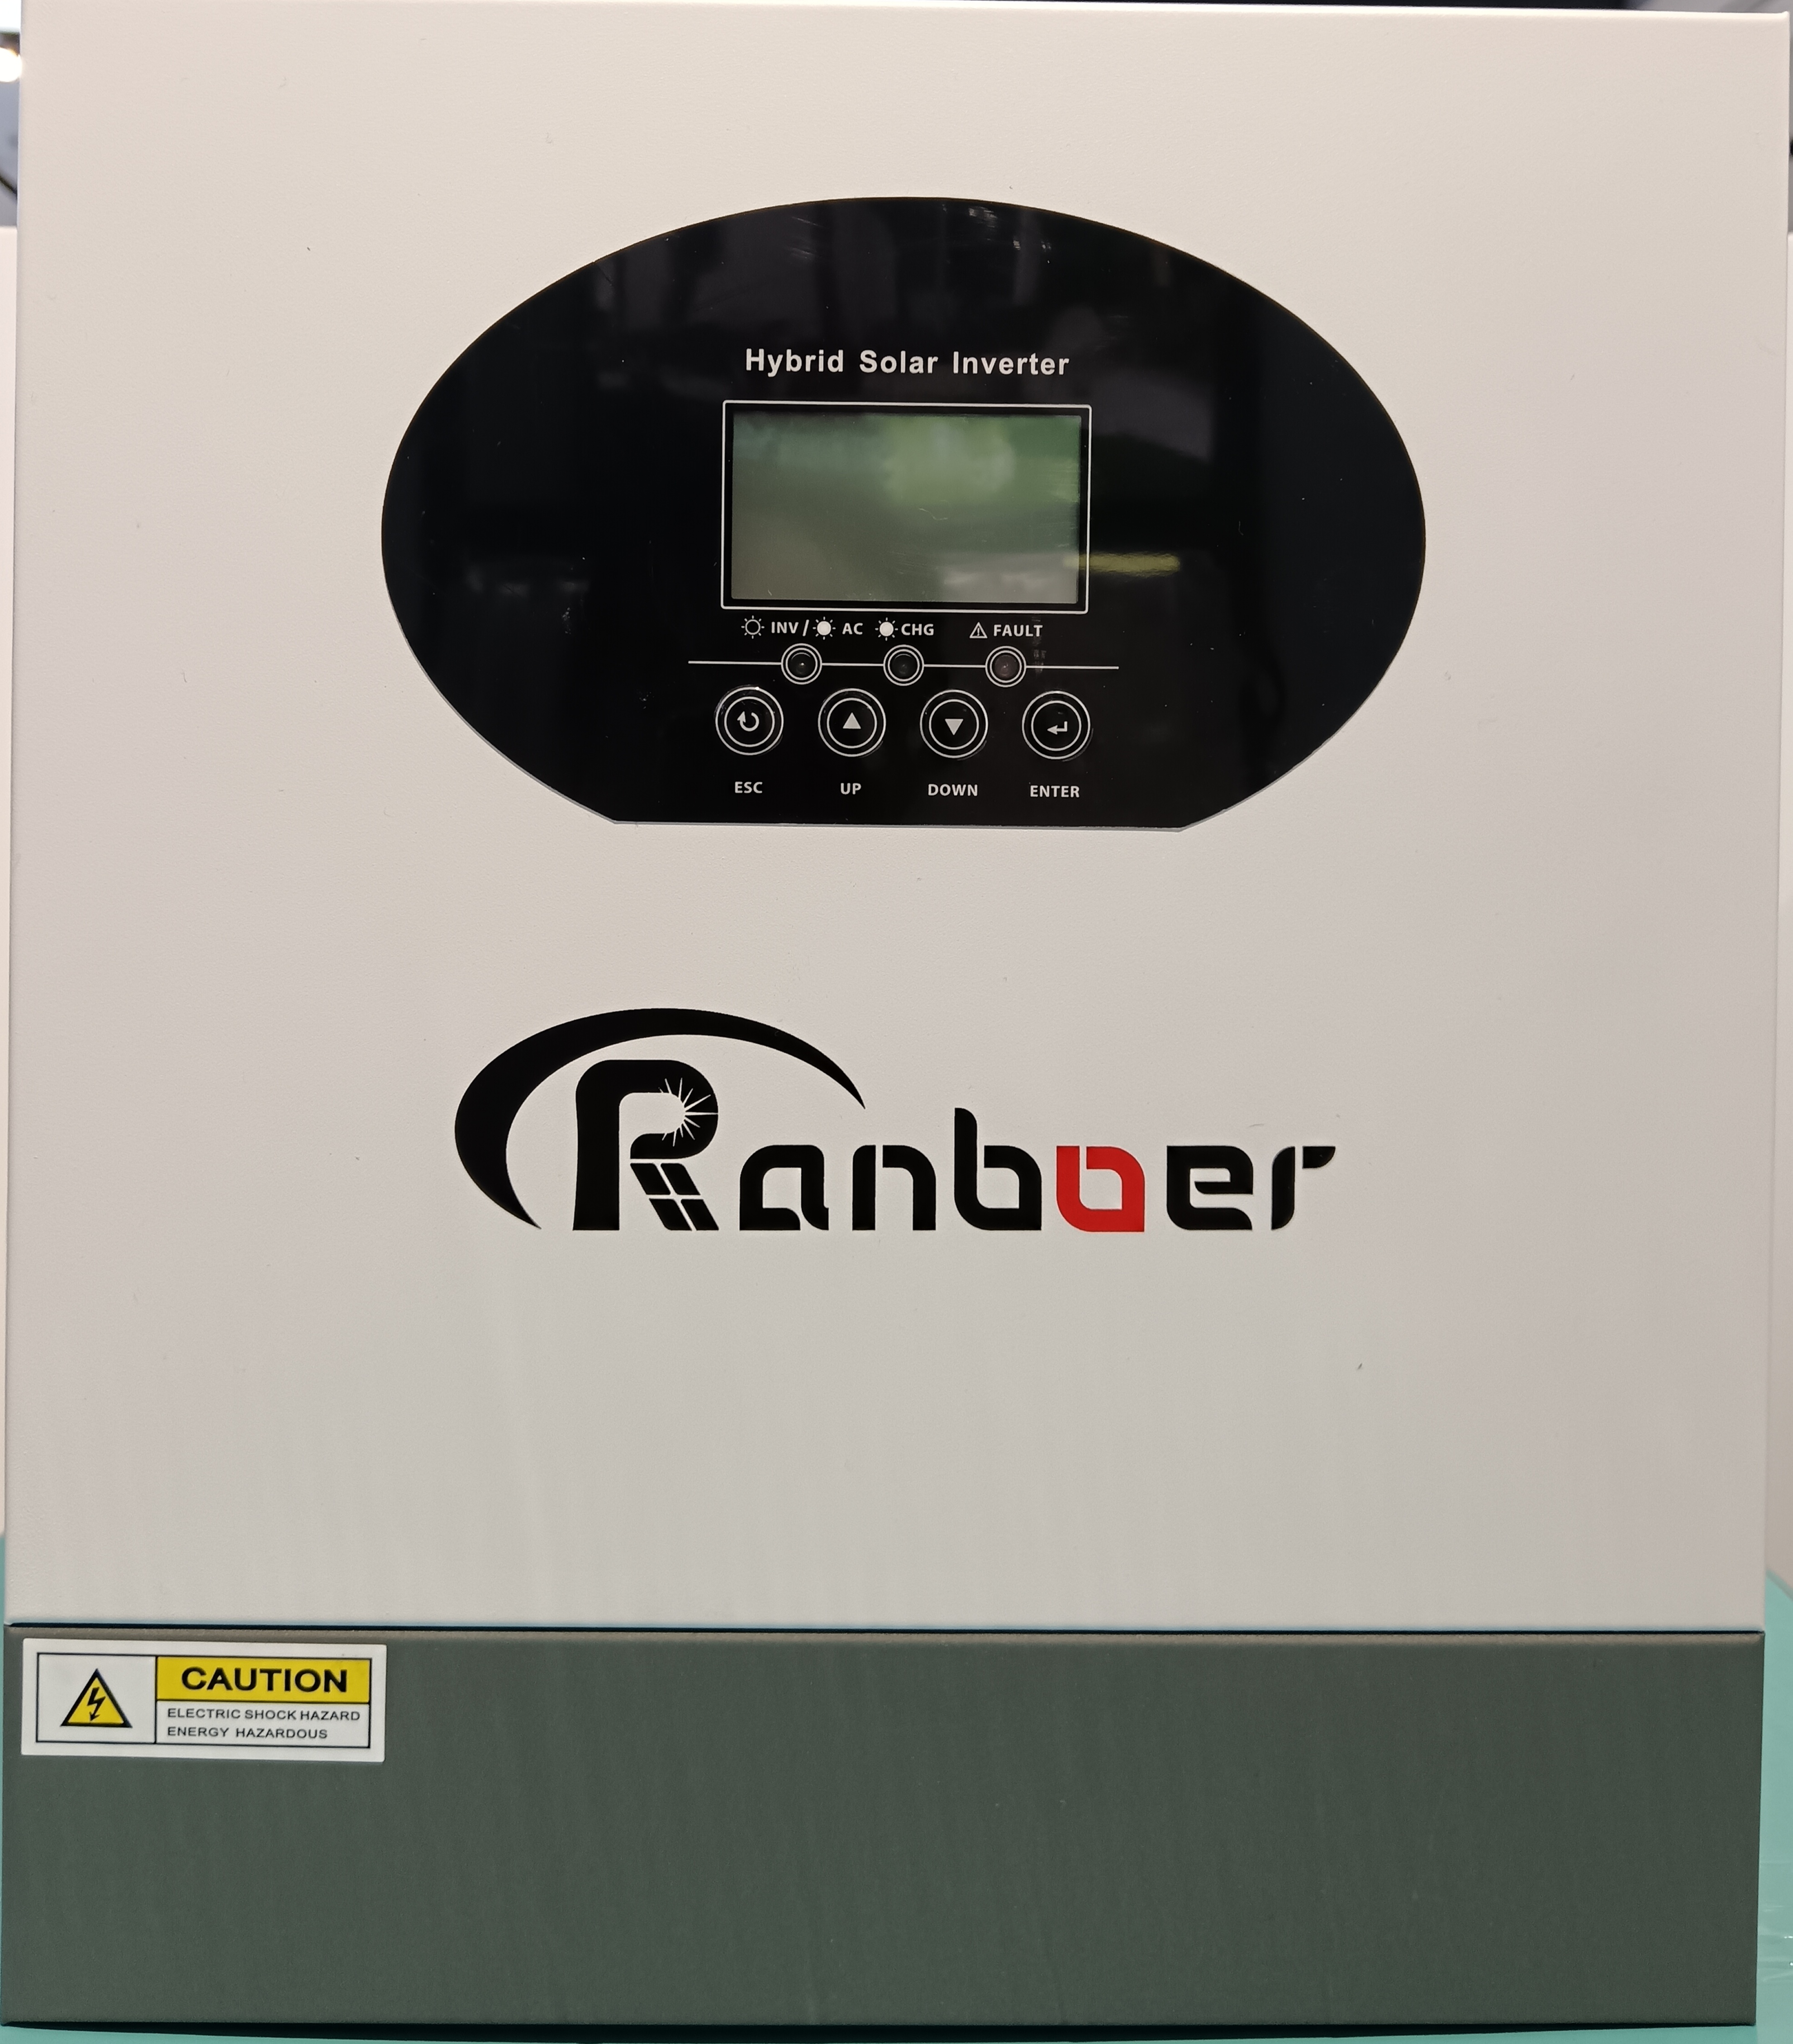 Ranboer润博离网逆变器3.5KW光伏转换器控制器一体机详情2